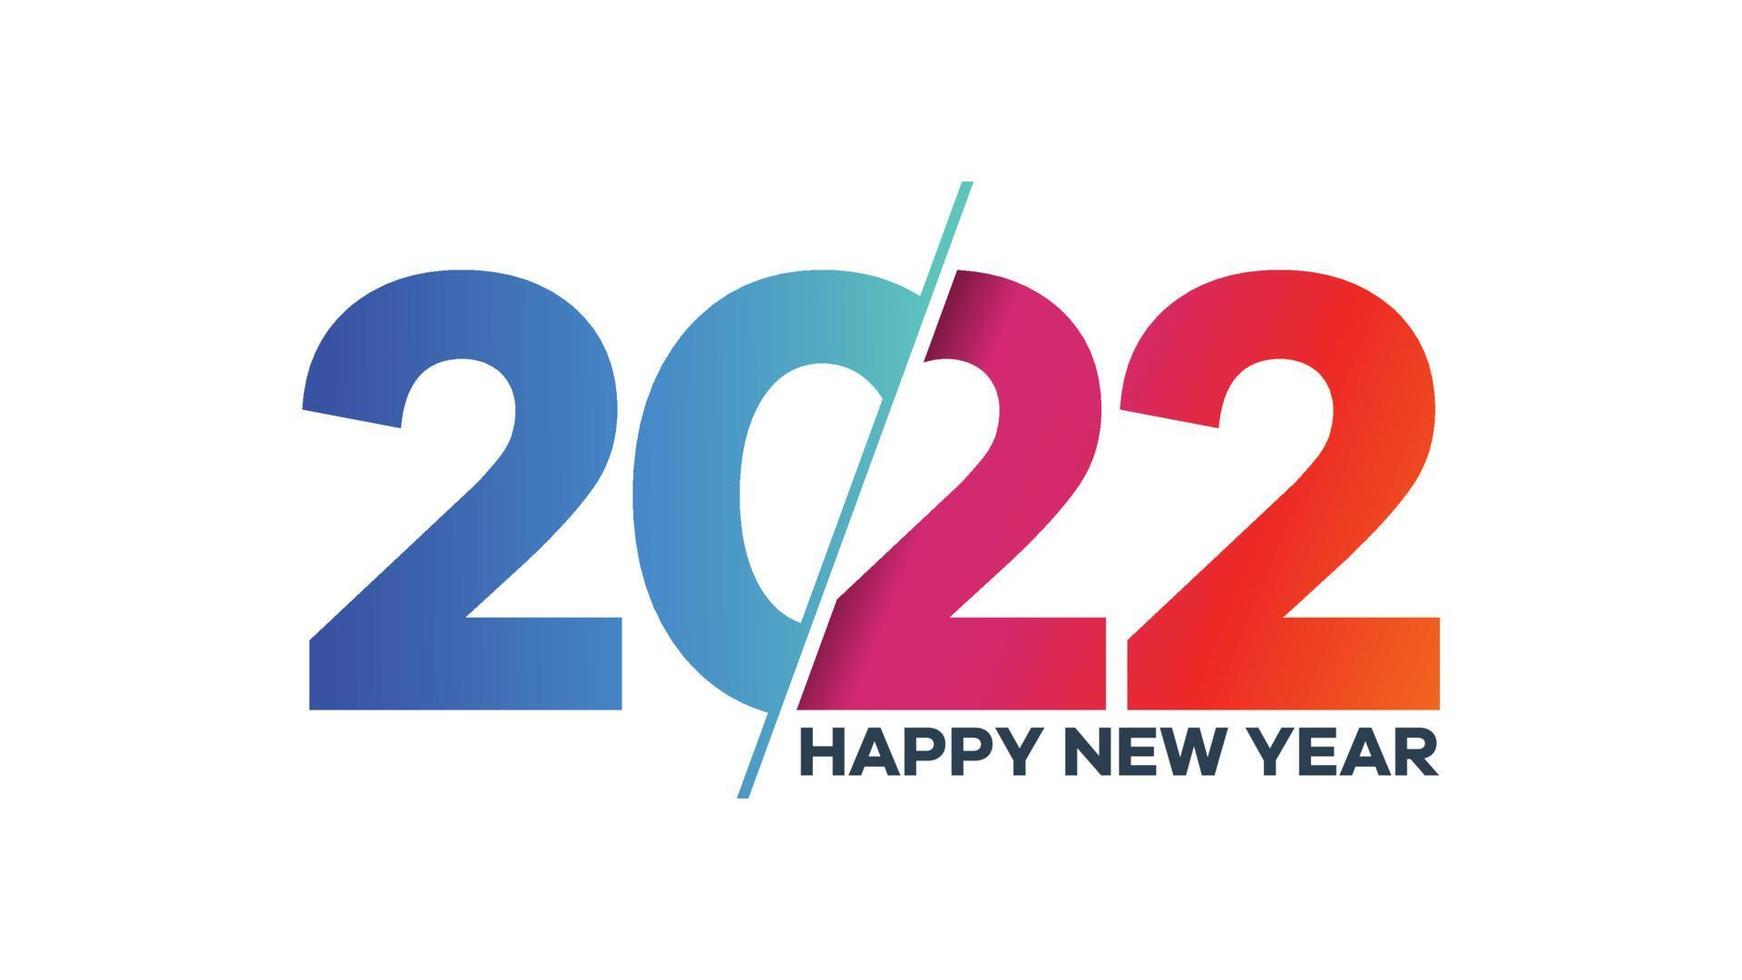 Frohes neues Jahr 2022 Grüße mit buntem Text vektor